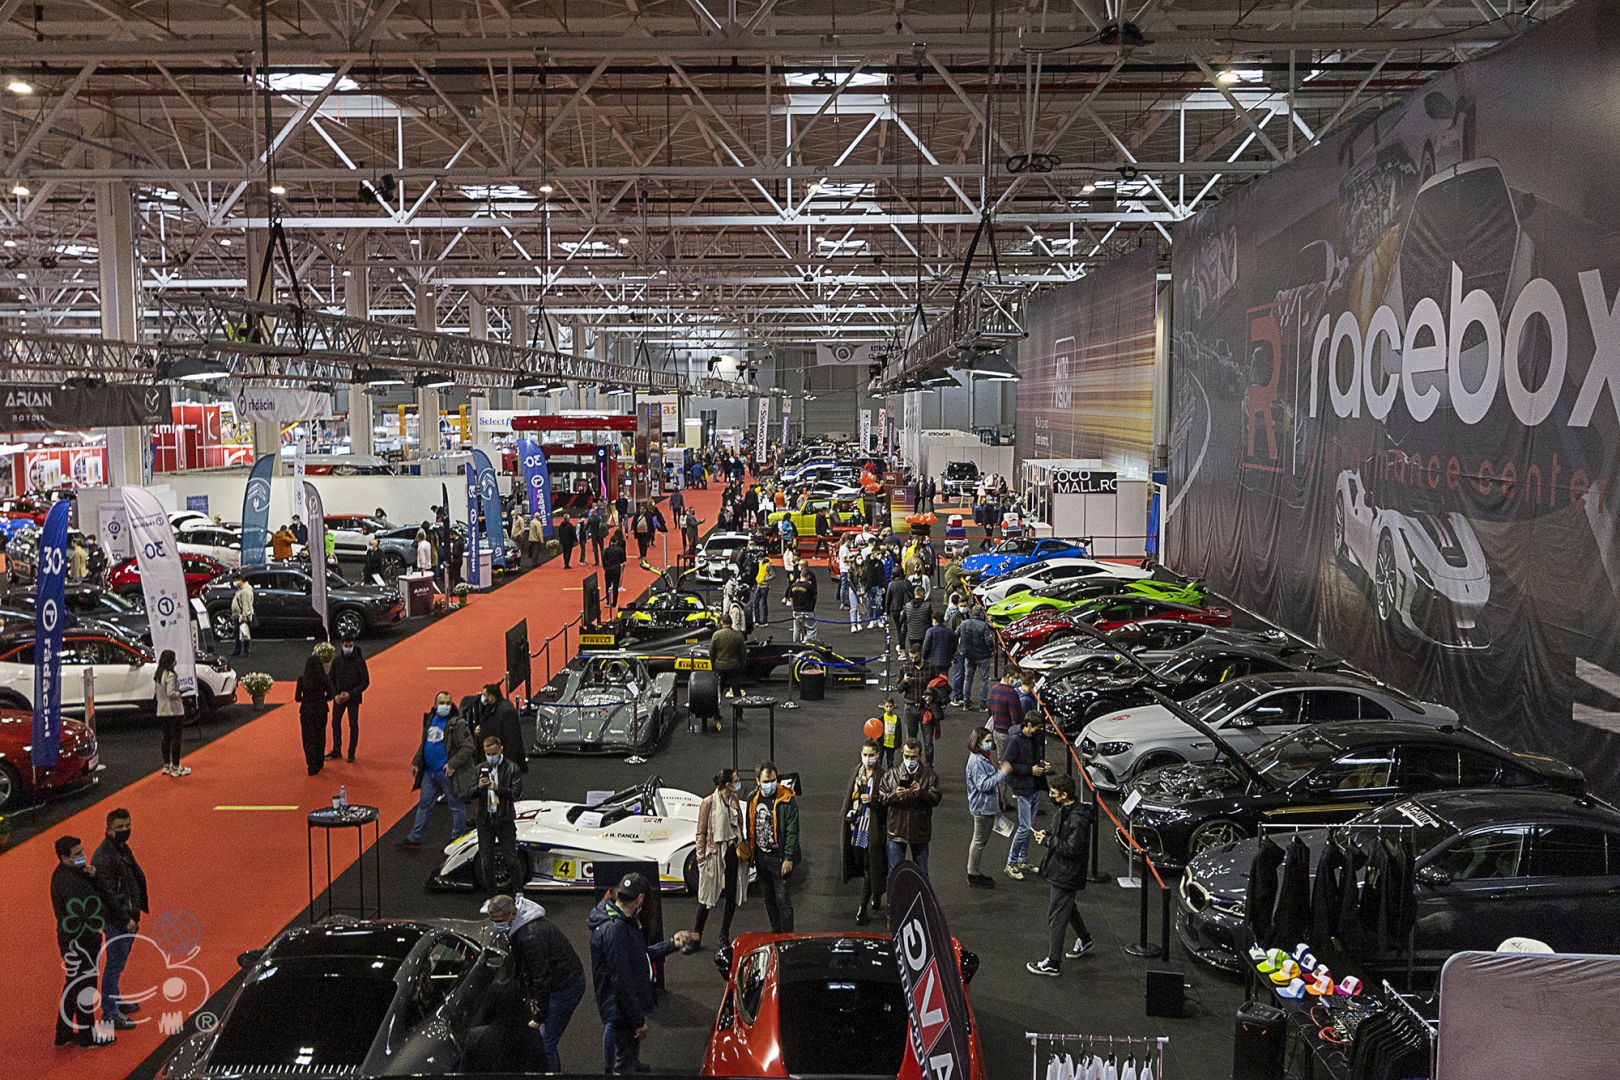 Salonul Auto București 2022 se mută într-un spațiu mai mare, la Romexpo. Este evenimentul auto de referință în România.